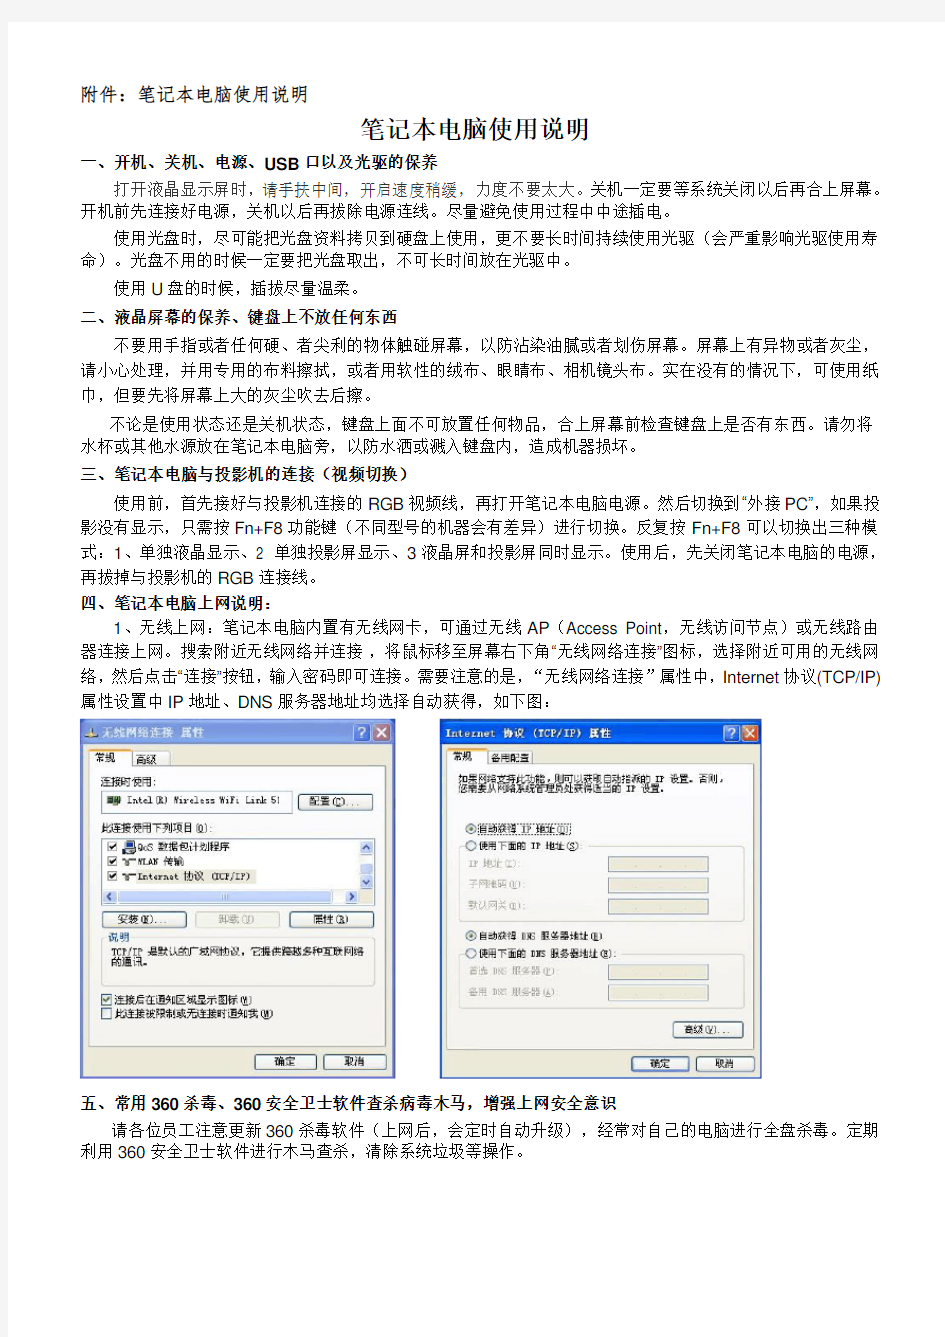 笔记本电脑使用说明及登记表